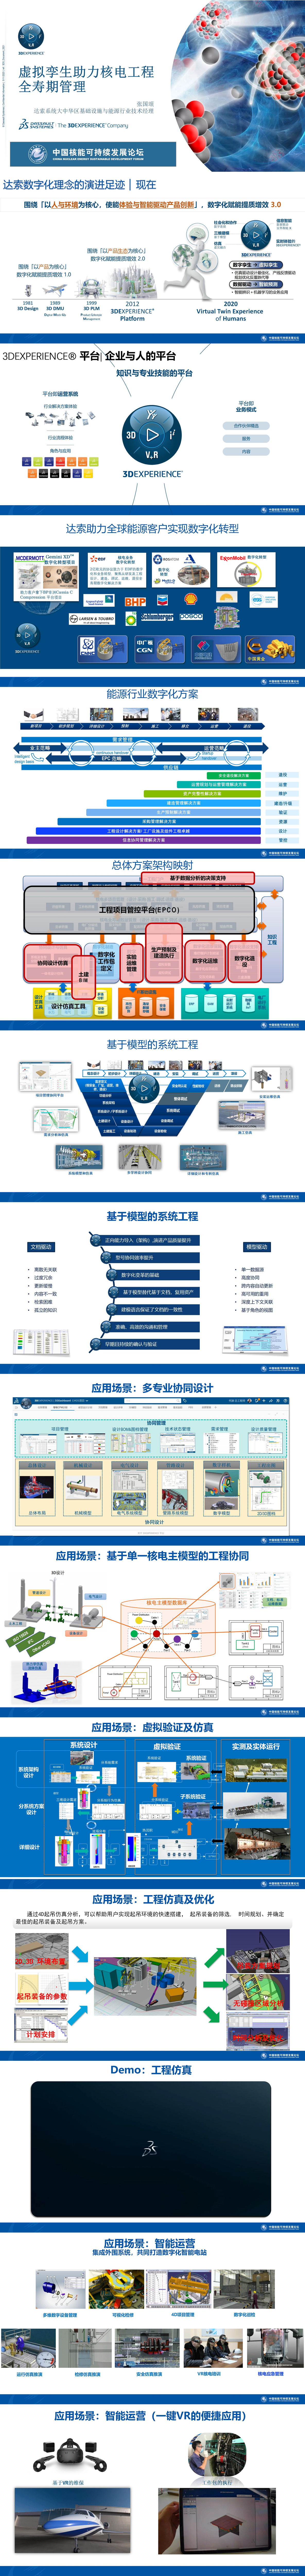 9、张国颂-中国核能可持续发展论坛——虚拟孪生助力核电工程全寿期管理-达索系统_01.jpg